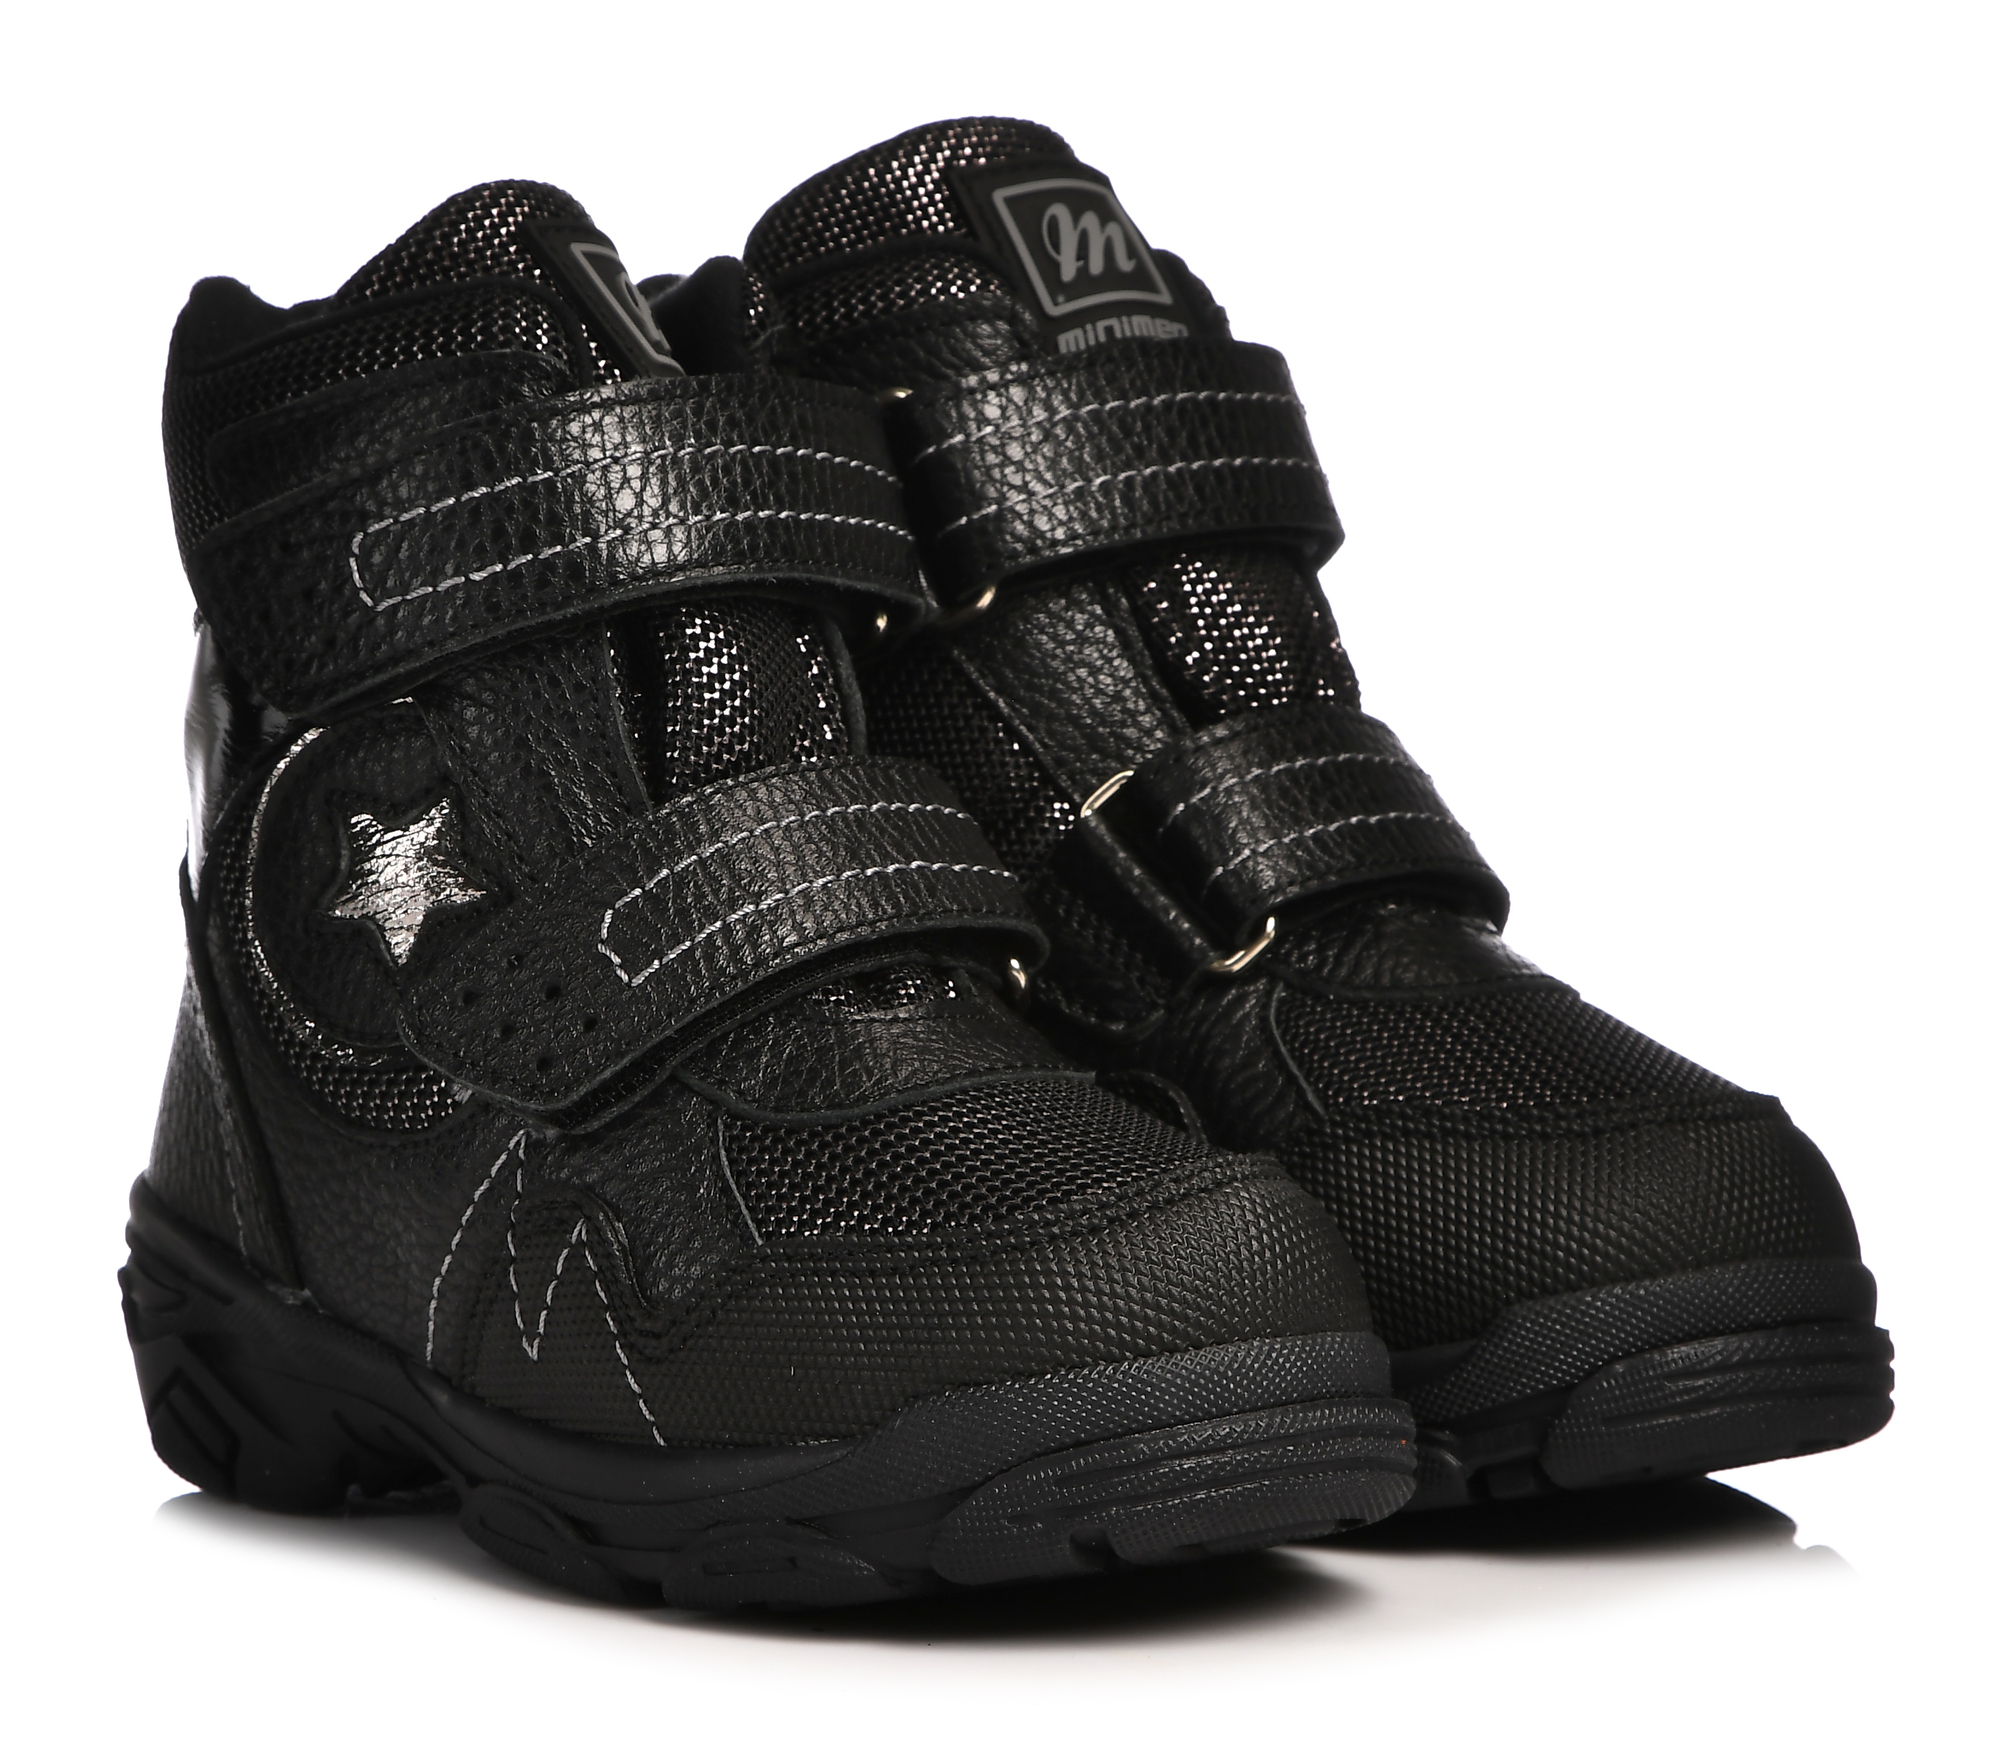 Ботинки Minimen для девочек, чёрные, размер 27, 2658-63-23B-05